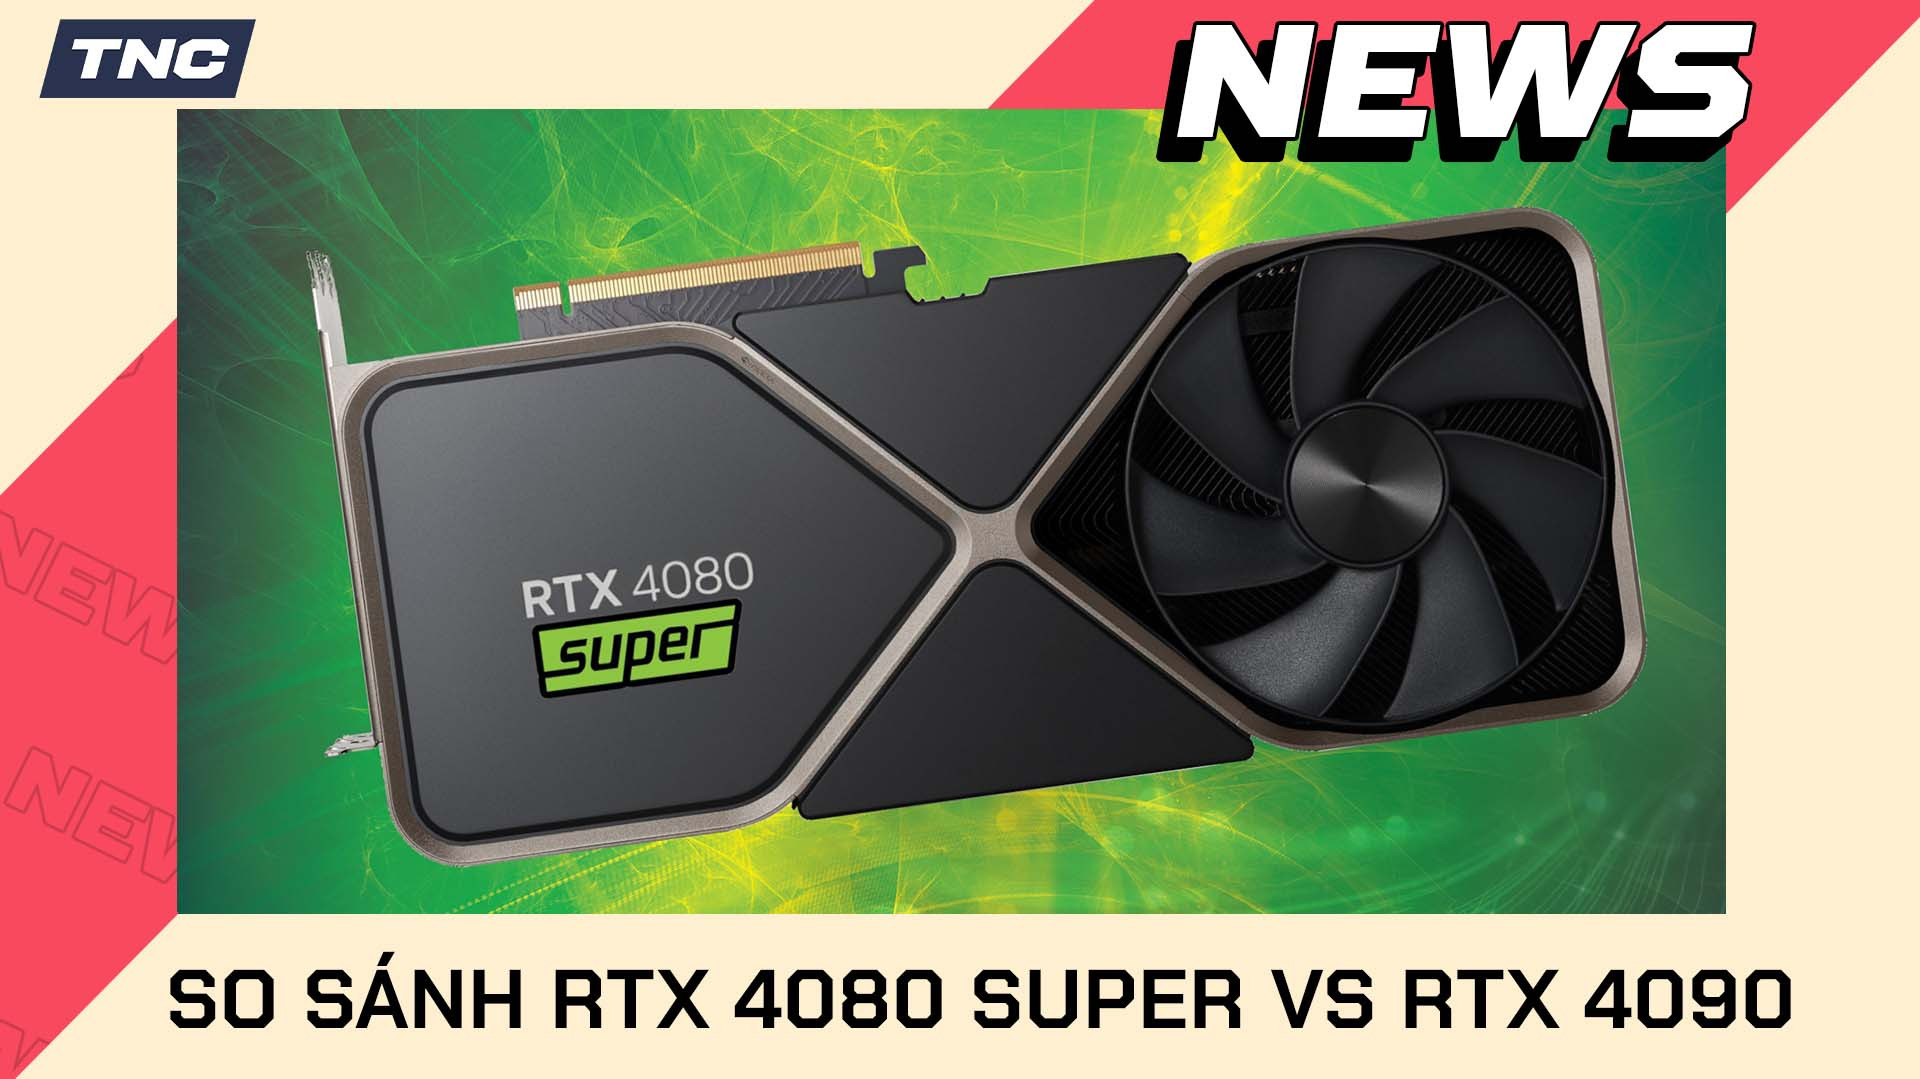 Nvidia RTX 4080 Super Và RTX 4090 Có Thật Sự Giống Nhau?